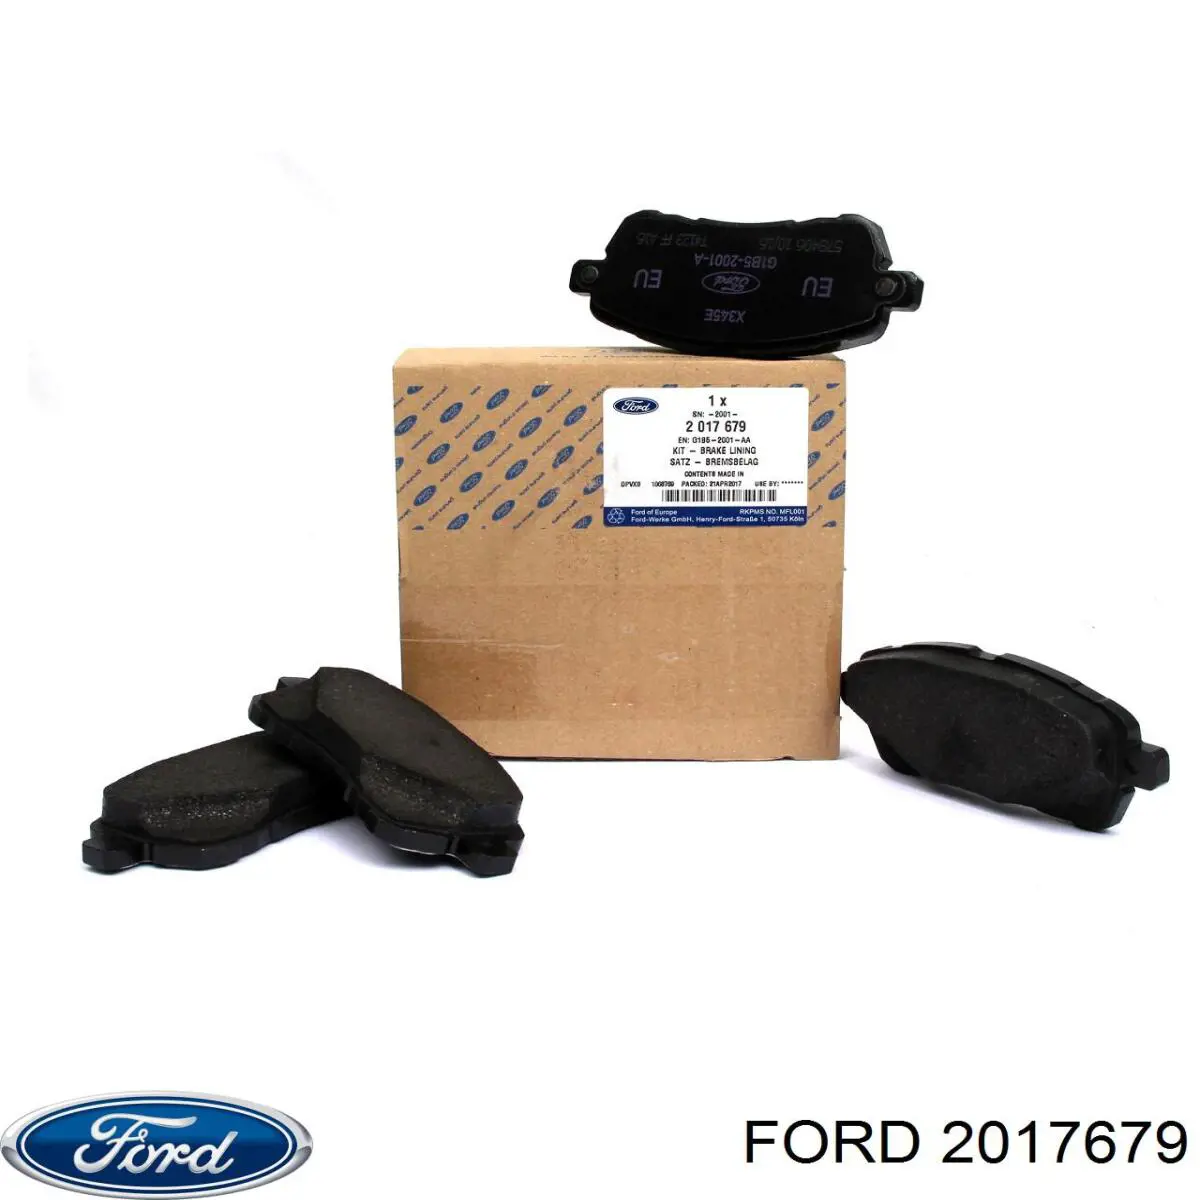 2017679 Ford колодки тормозные передние дисковые